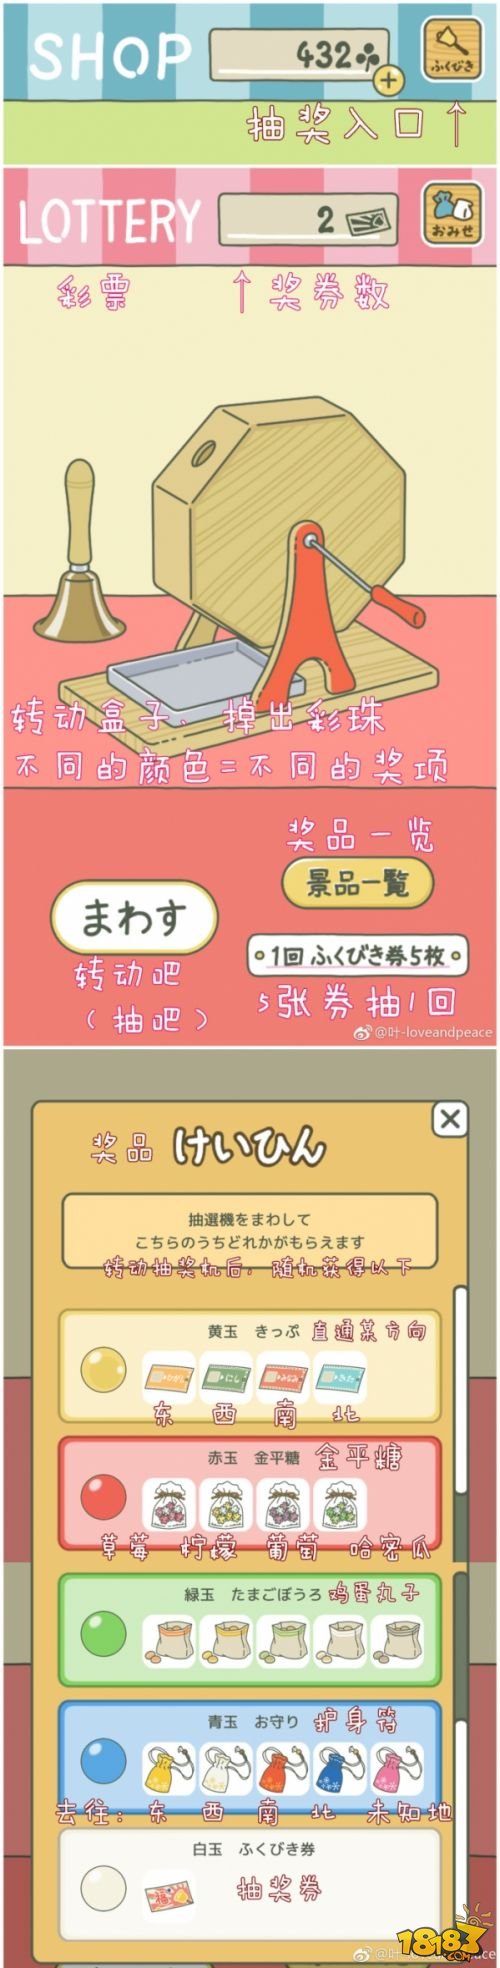 養青蛙的遊戲日文界面中文翻譯 旅行青蛙(旅かえる)中文界面翻譯對照圖